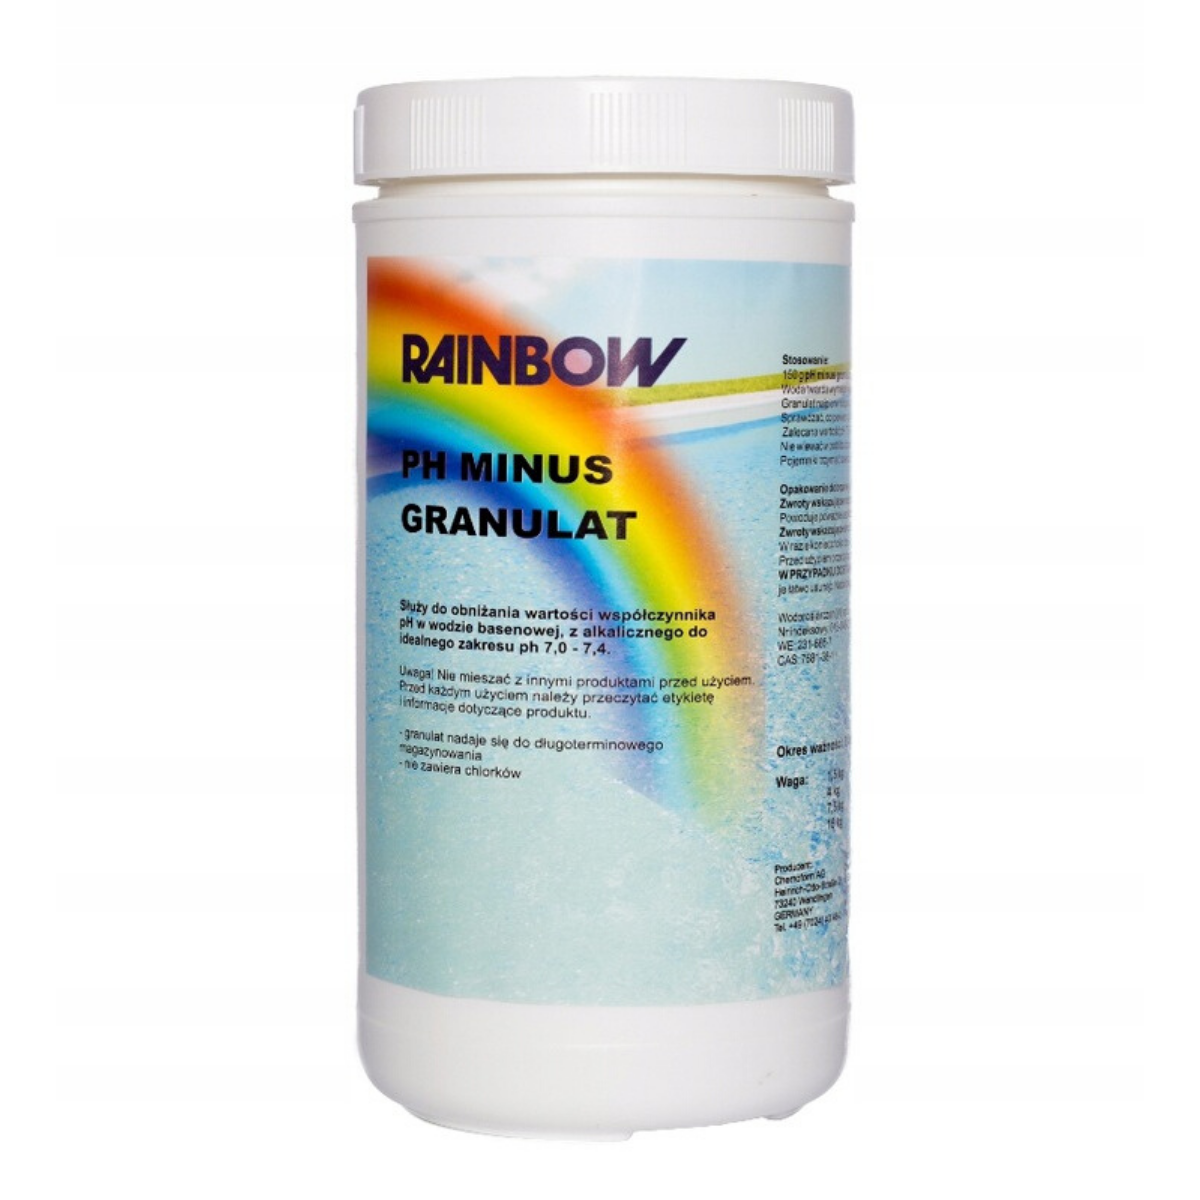 RAINBOW pH Minus granulat 1,5 KG - basensklep